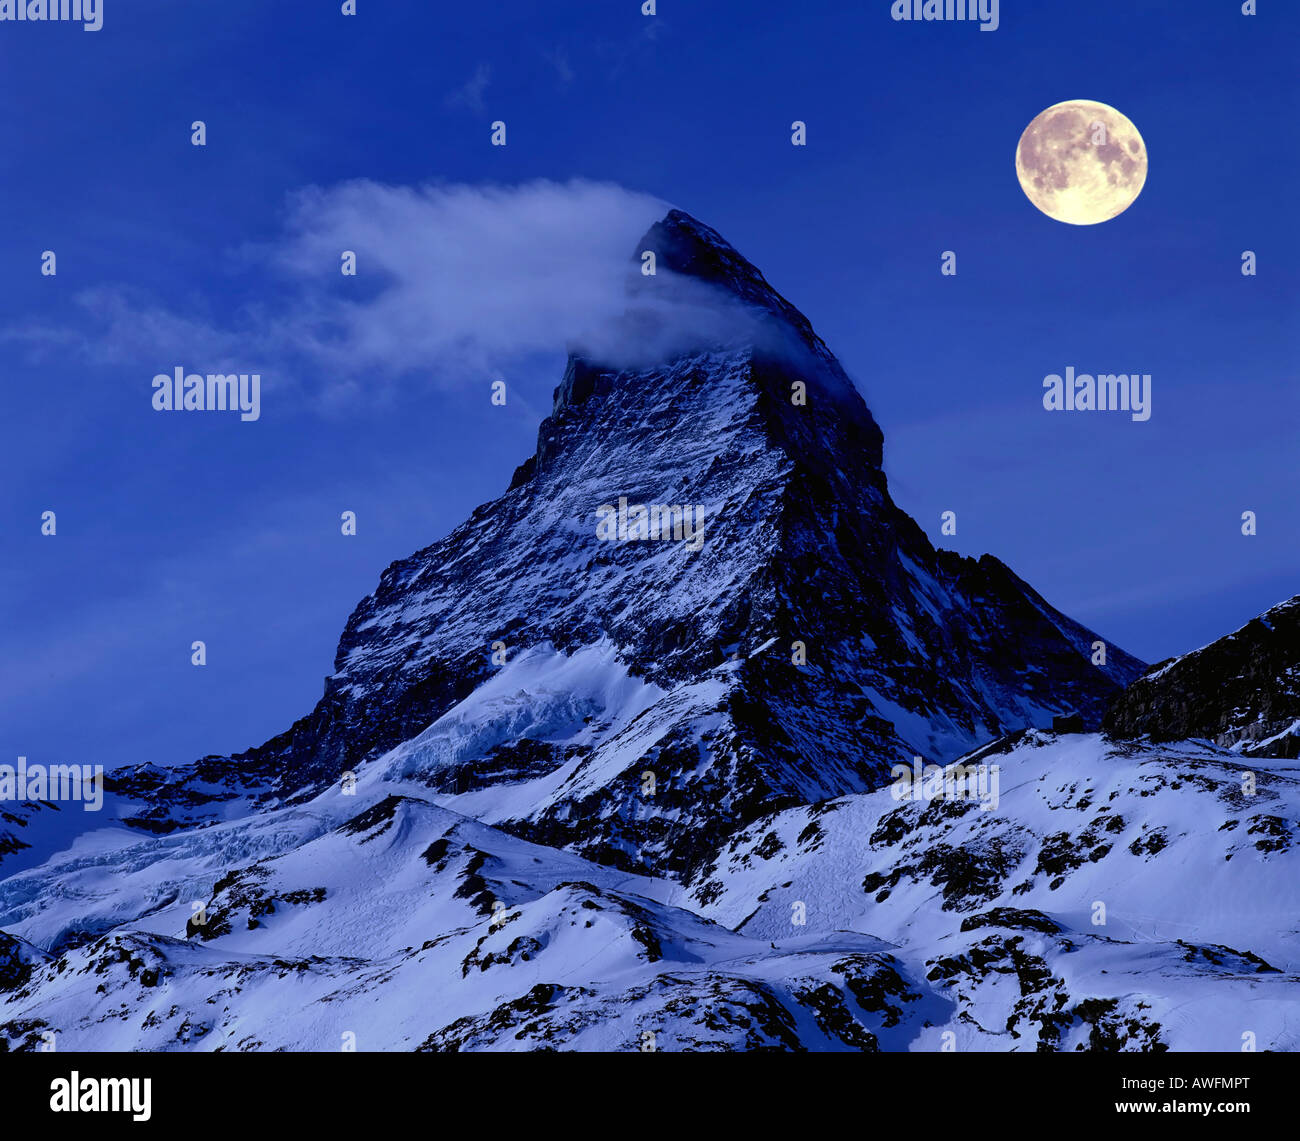 La pleine lune sur Mt. Matterhorn (composer), Alpes valaisannes, Zermatt, Valais, Suisse, Europe Banque D'Images